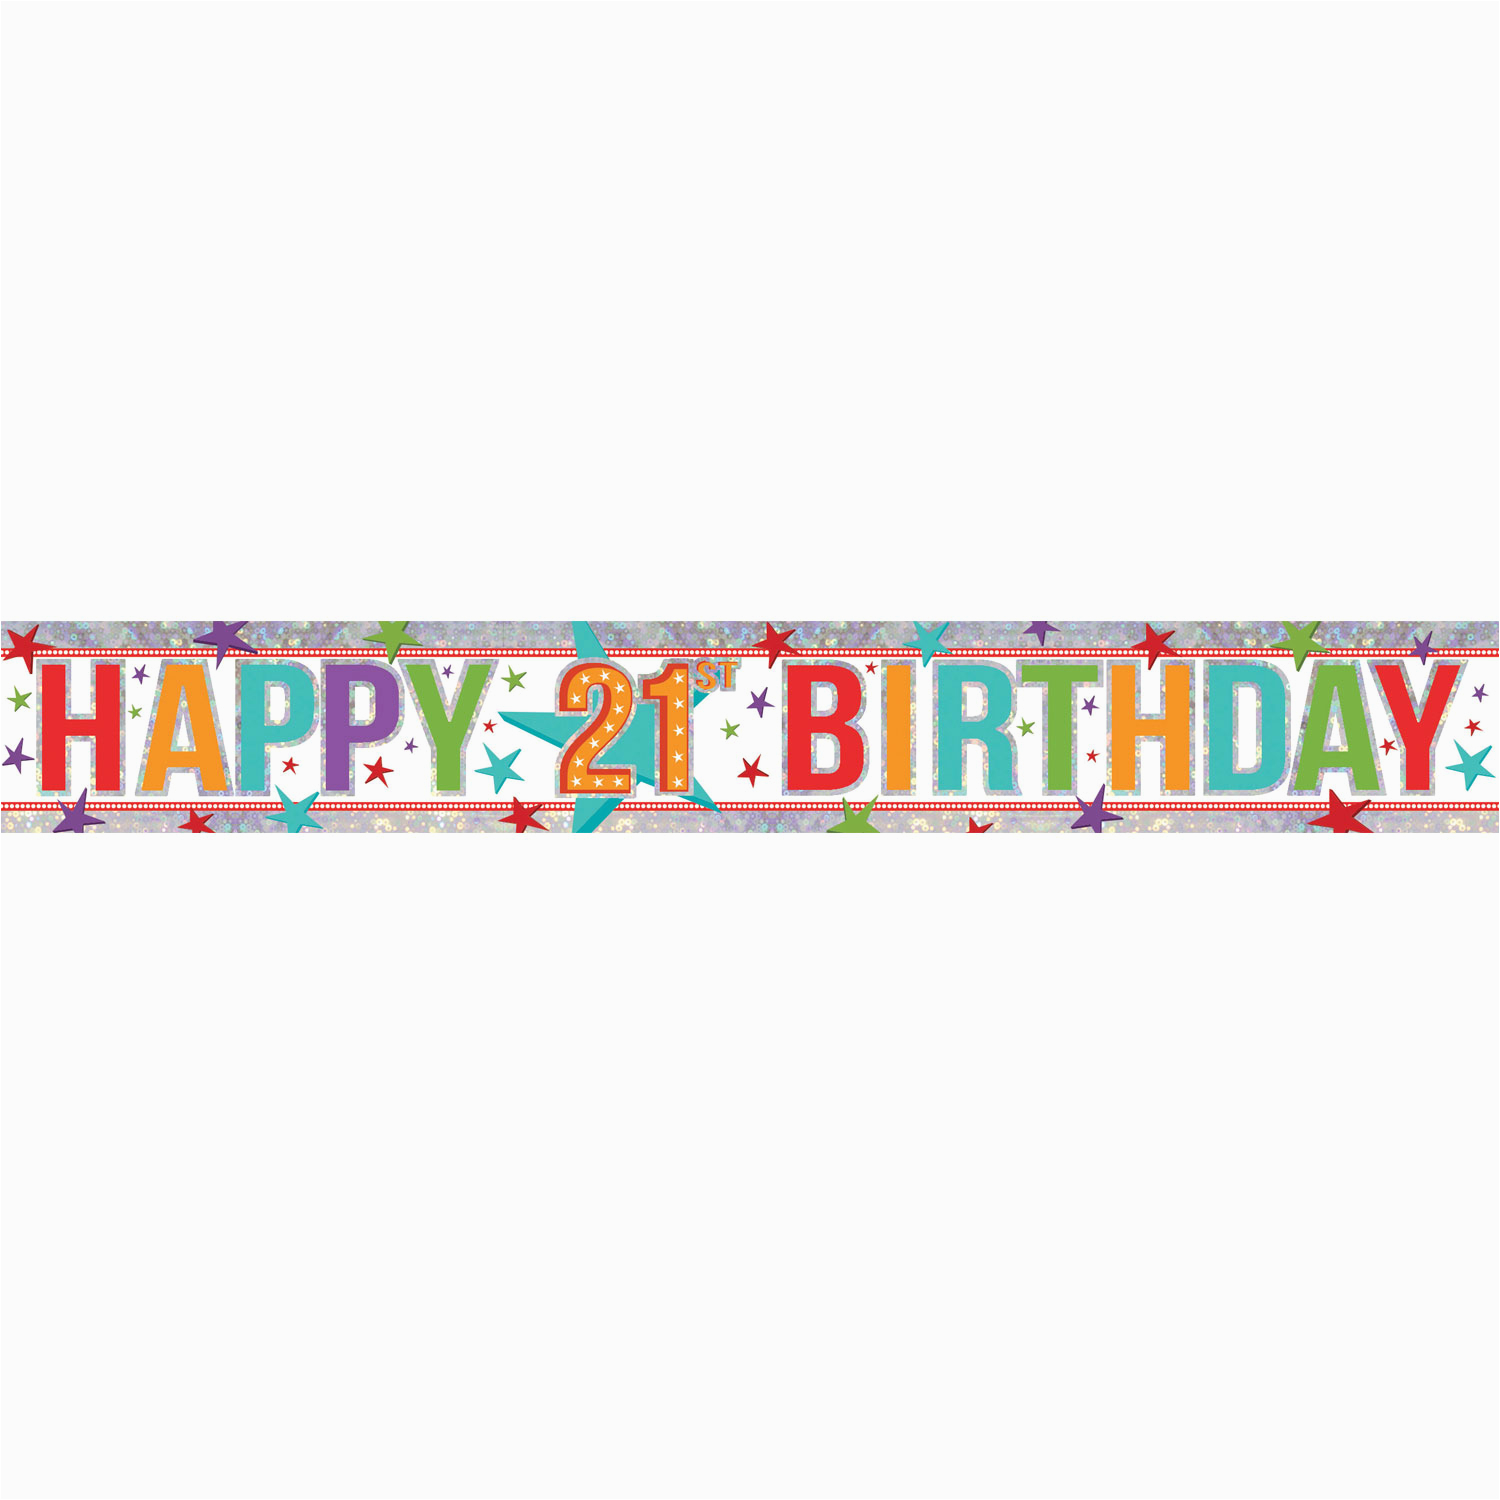 happy-21st-birthday-banner-clip-art-free-birthdaybuzz